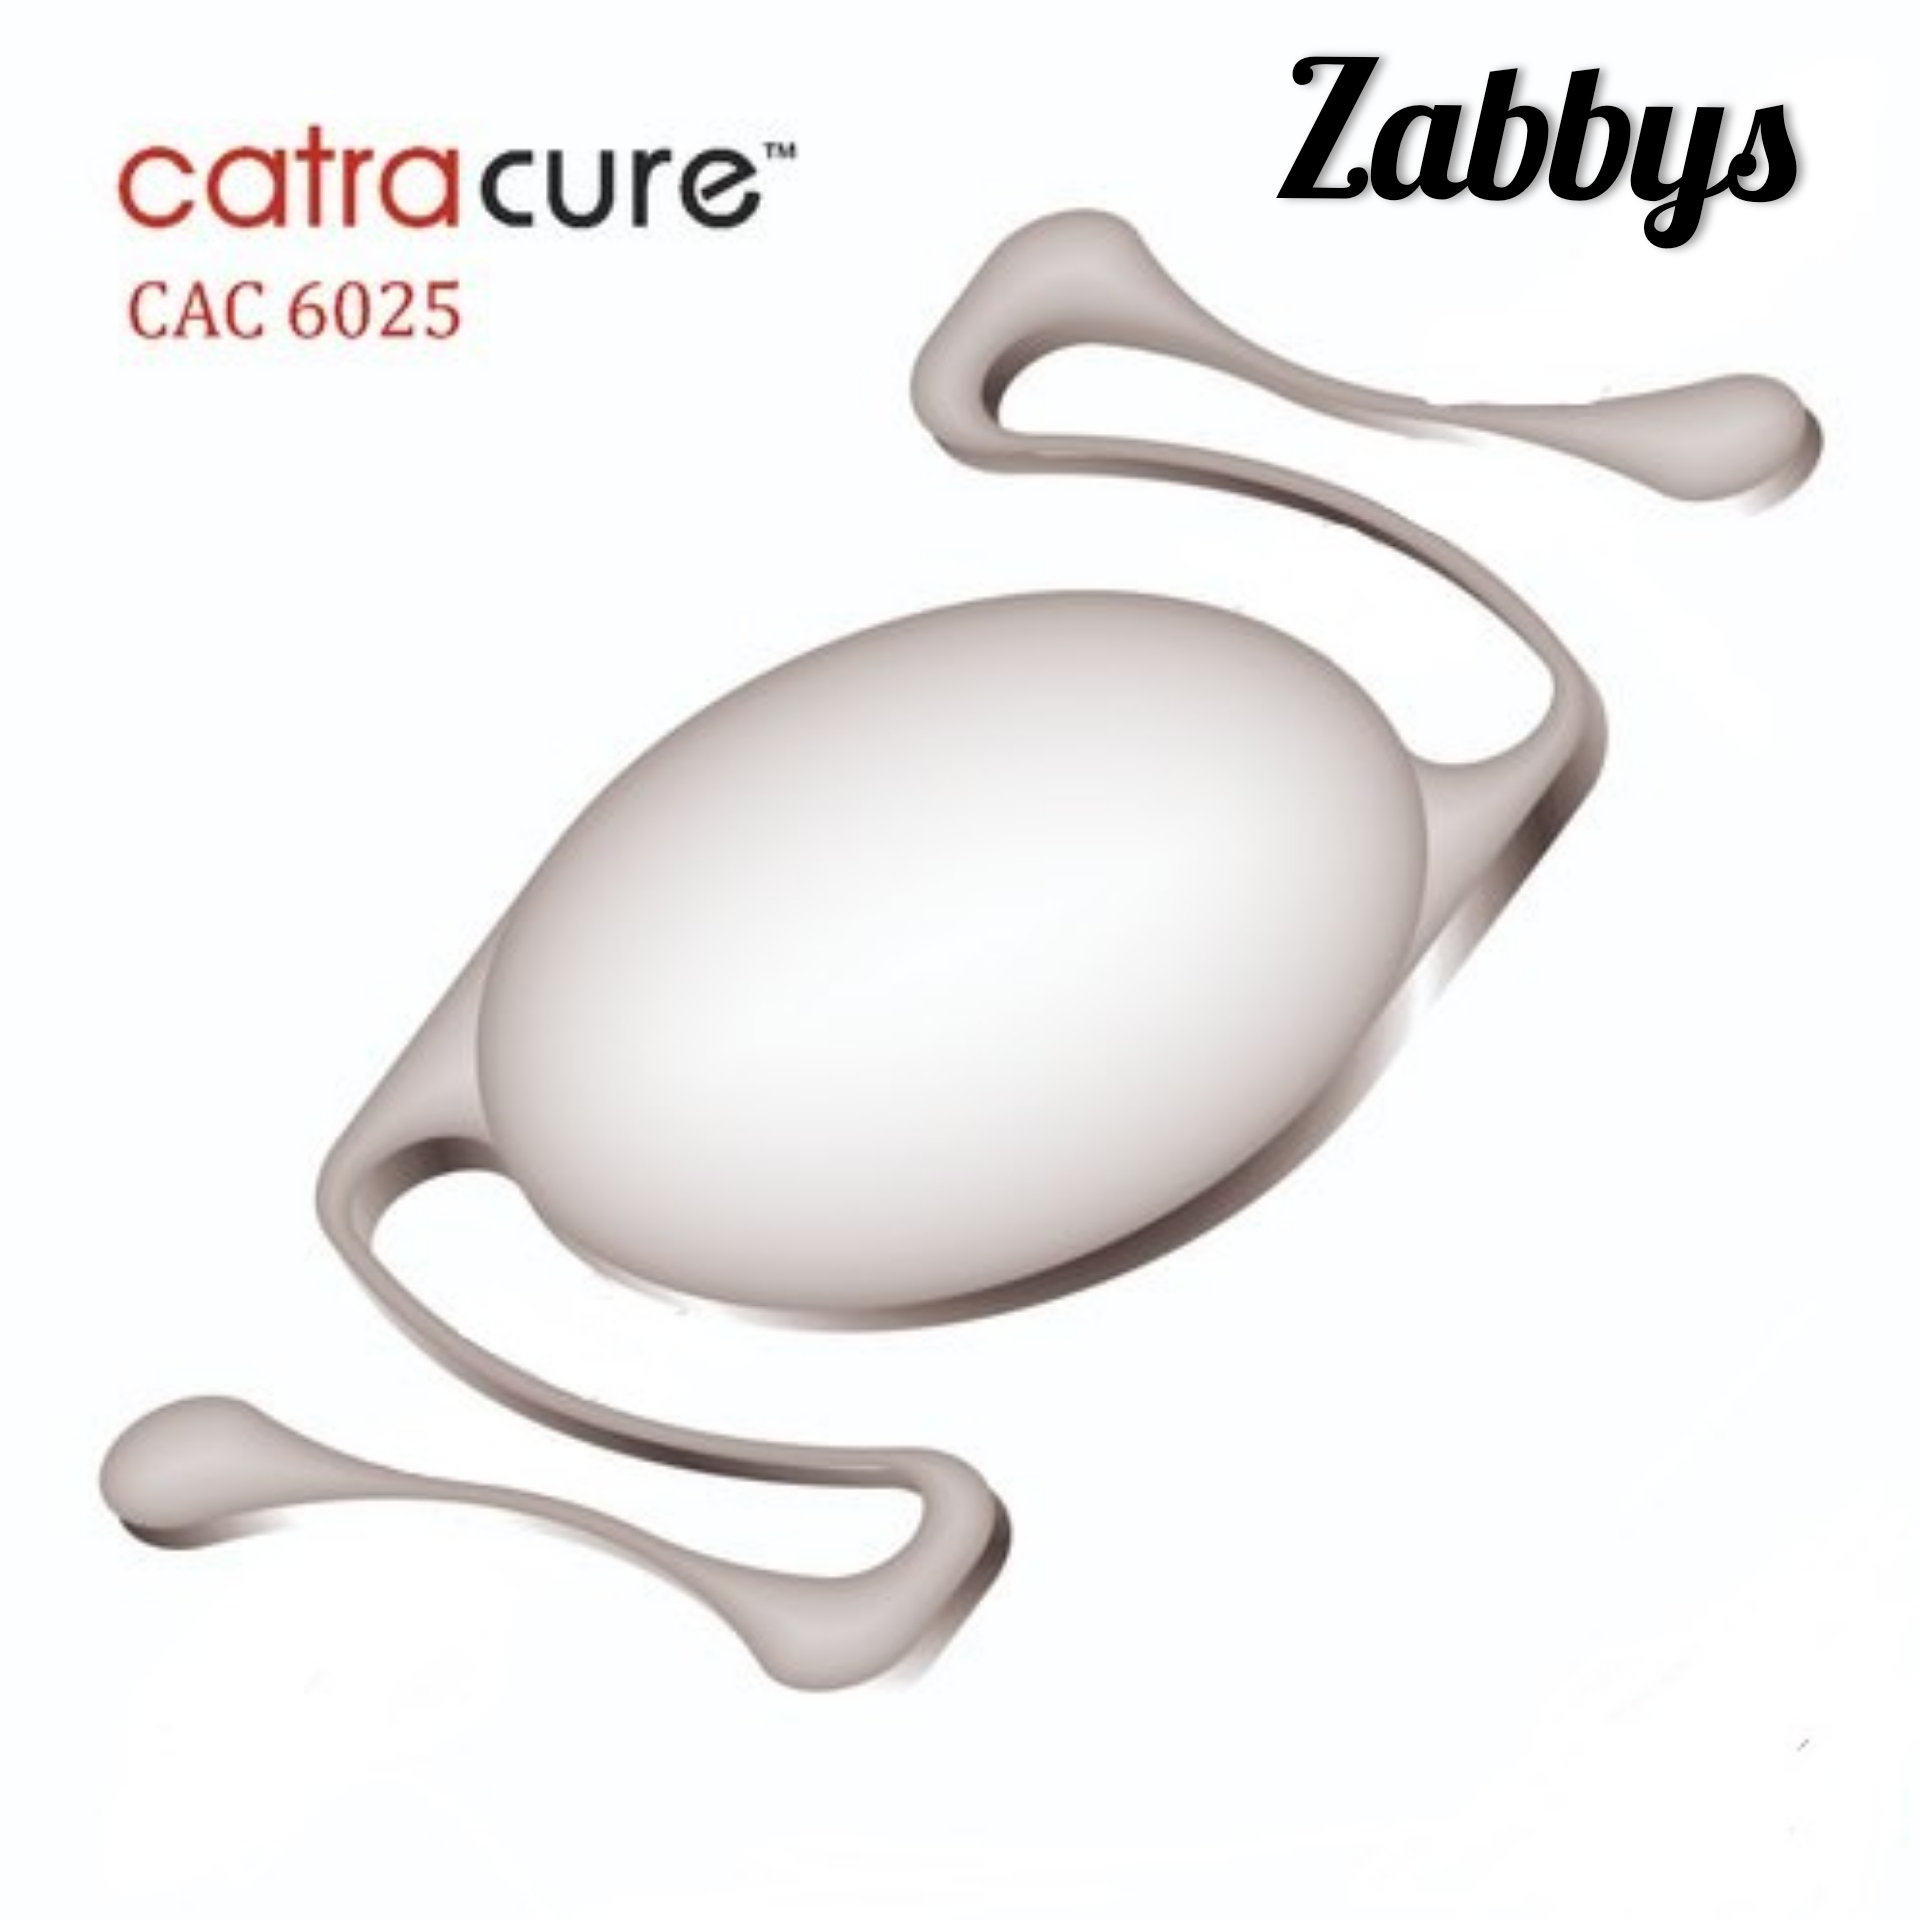 Zabbys Catracure